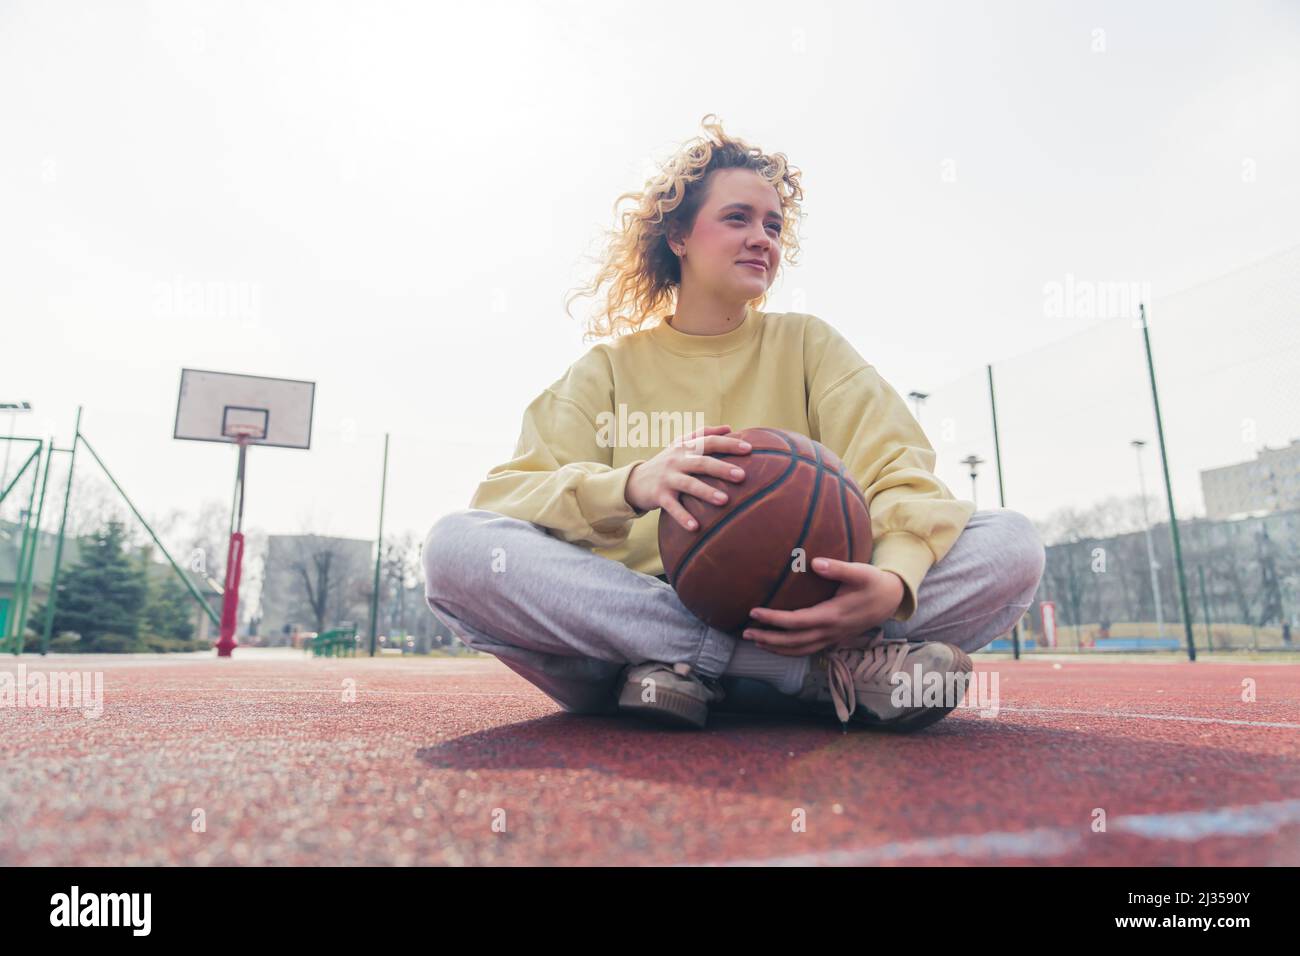 Hermosa joven rubia europea se sienta en la cancha de baloncesto, piernas cruzadas, teniendo pelota de baloncesto en sus manos copia espacio completo tiro . Fotografías de alta calidad Foto de stock